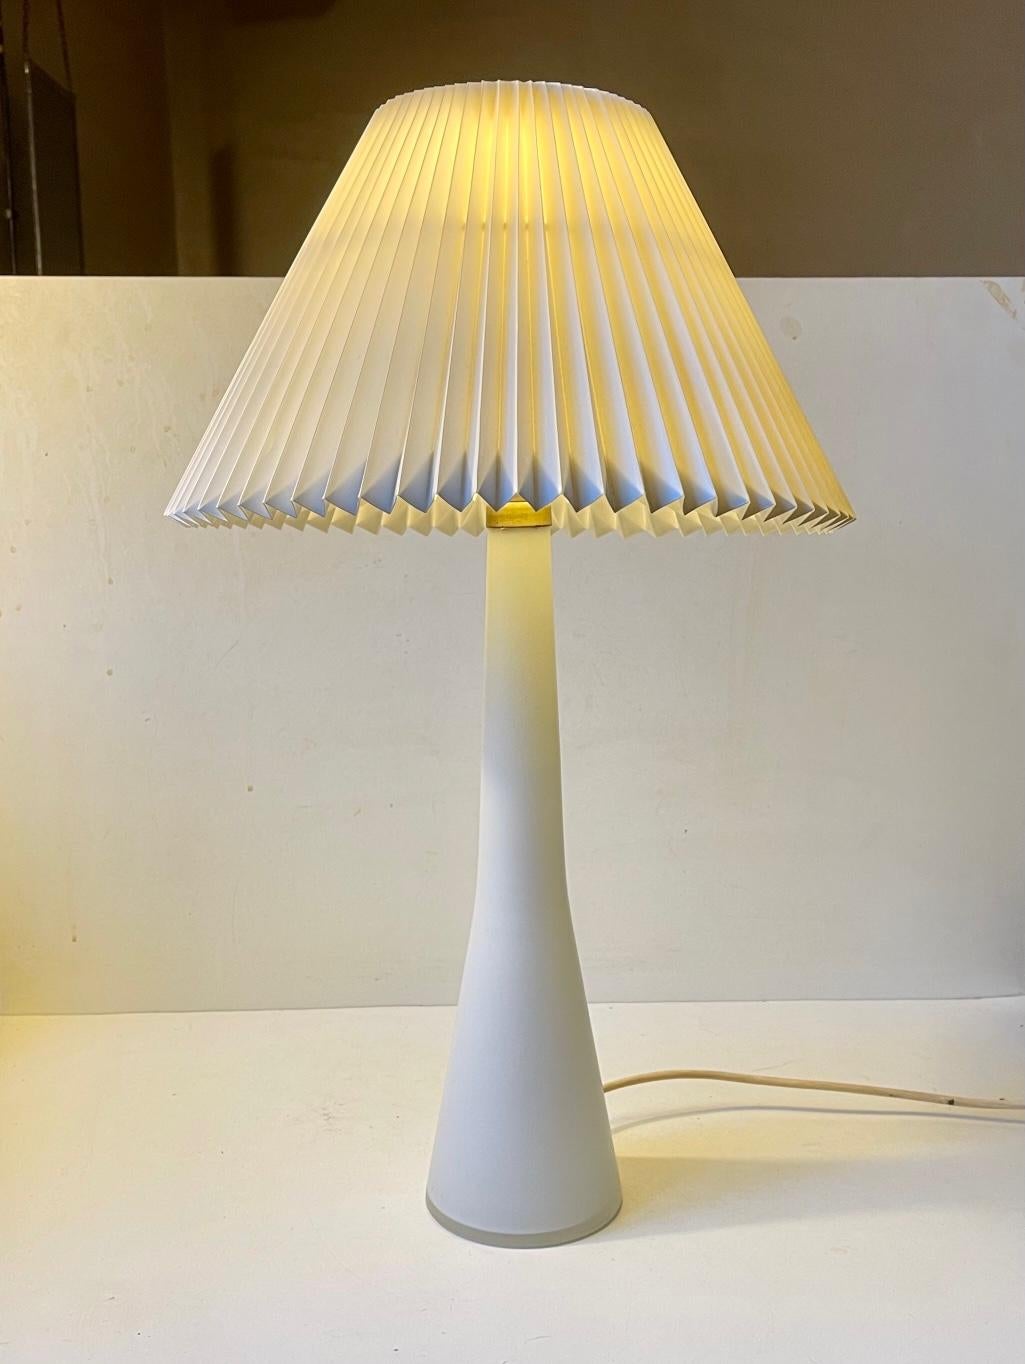 Grande et exceptionnellement rare lampe de table en verre opalin dépoli mat. Fabriqué par Voss/Holmegaard pour Le Klint au Danemark dans les années 1950 ou au début des années 1960. L'abat-jour vintage cannelé Le Klint de Tage Klint est réalisé en